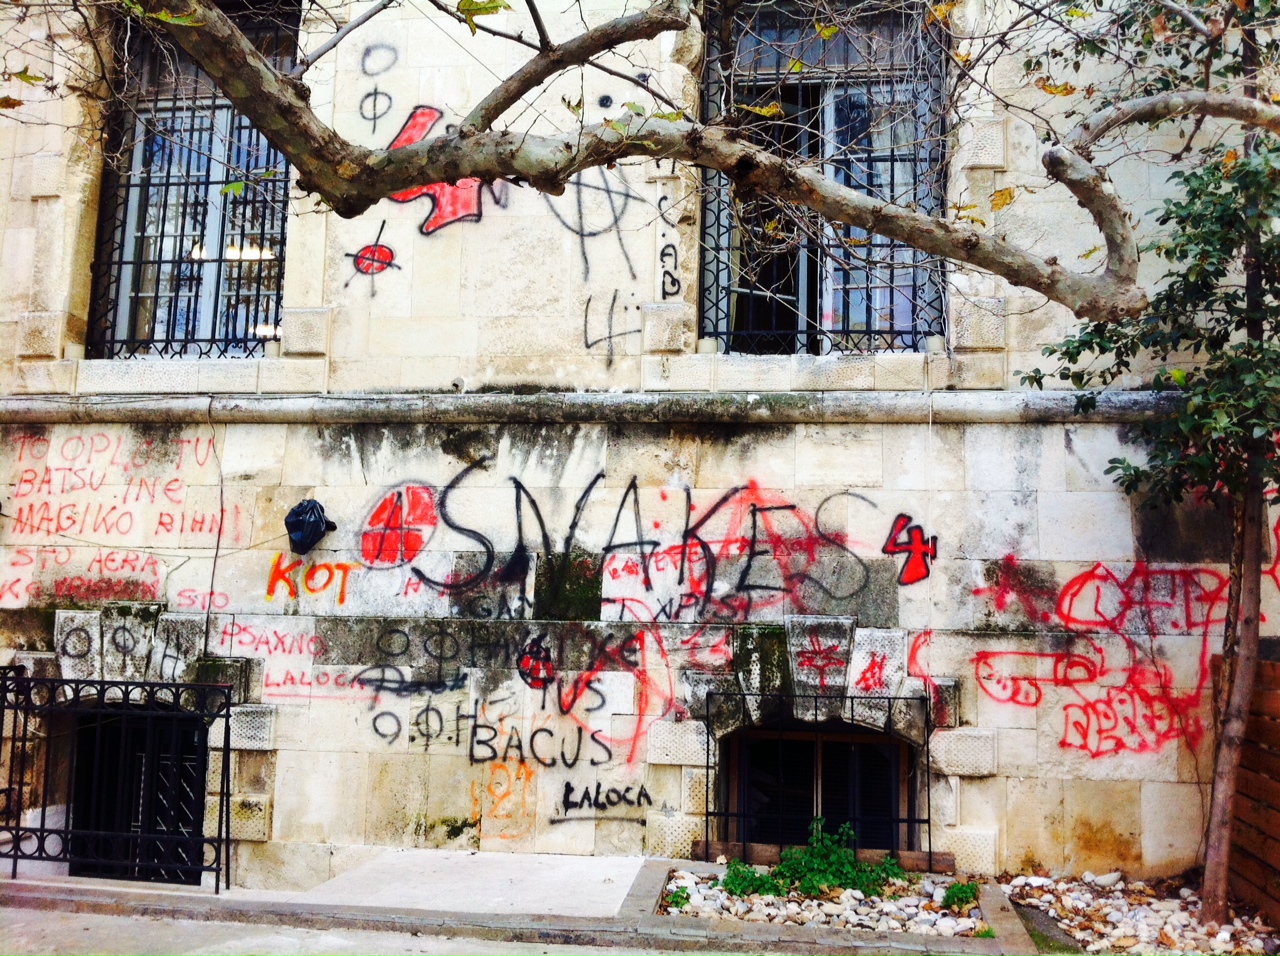 Καθαρίζουν την πόλη απο γκράφιτι και συνθήματα (φωτο)